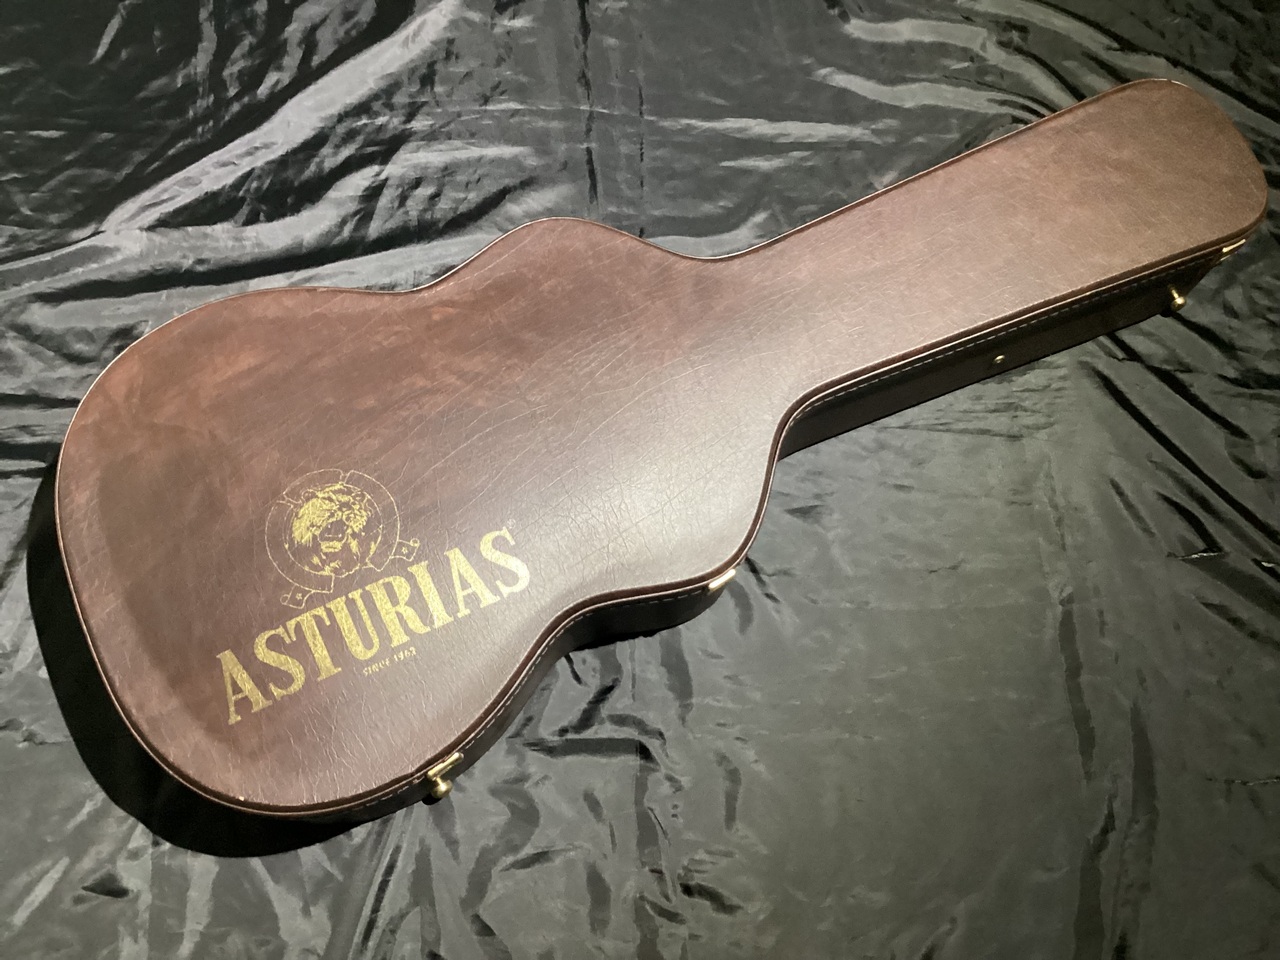 ASTURIAS LG系アコースティックギター / クラシックギター兼用ハード 